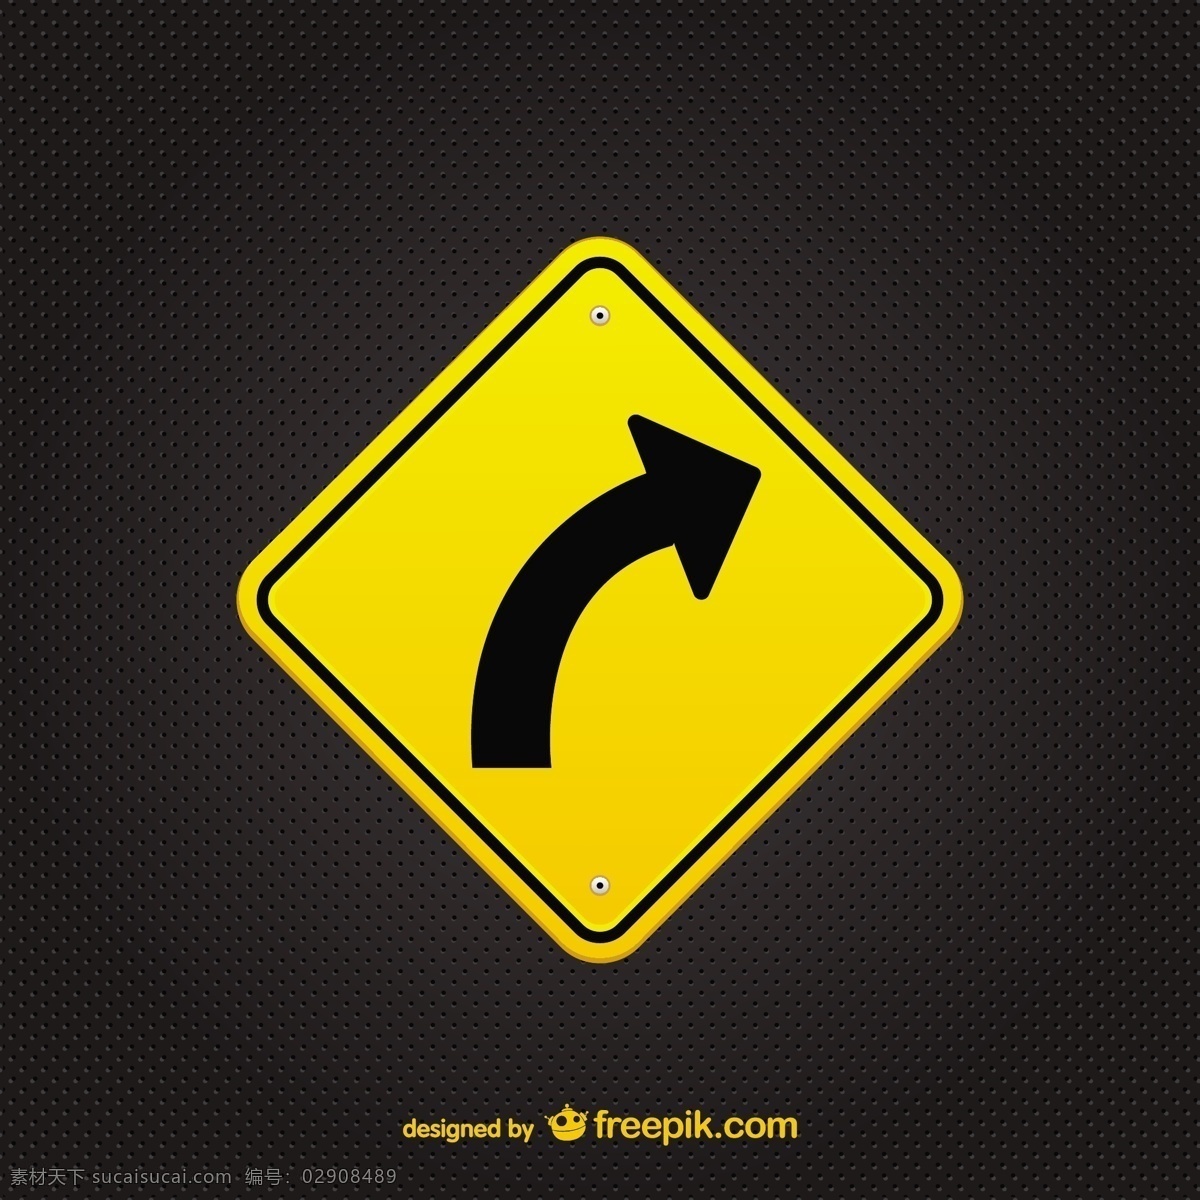 黄色箭头标志 箭头 旅游 道路 图形 标志 交通 元素 道路标志 符号 危险 公路 黑色